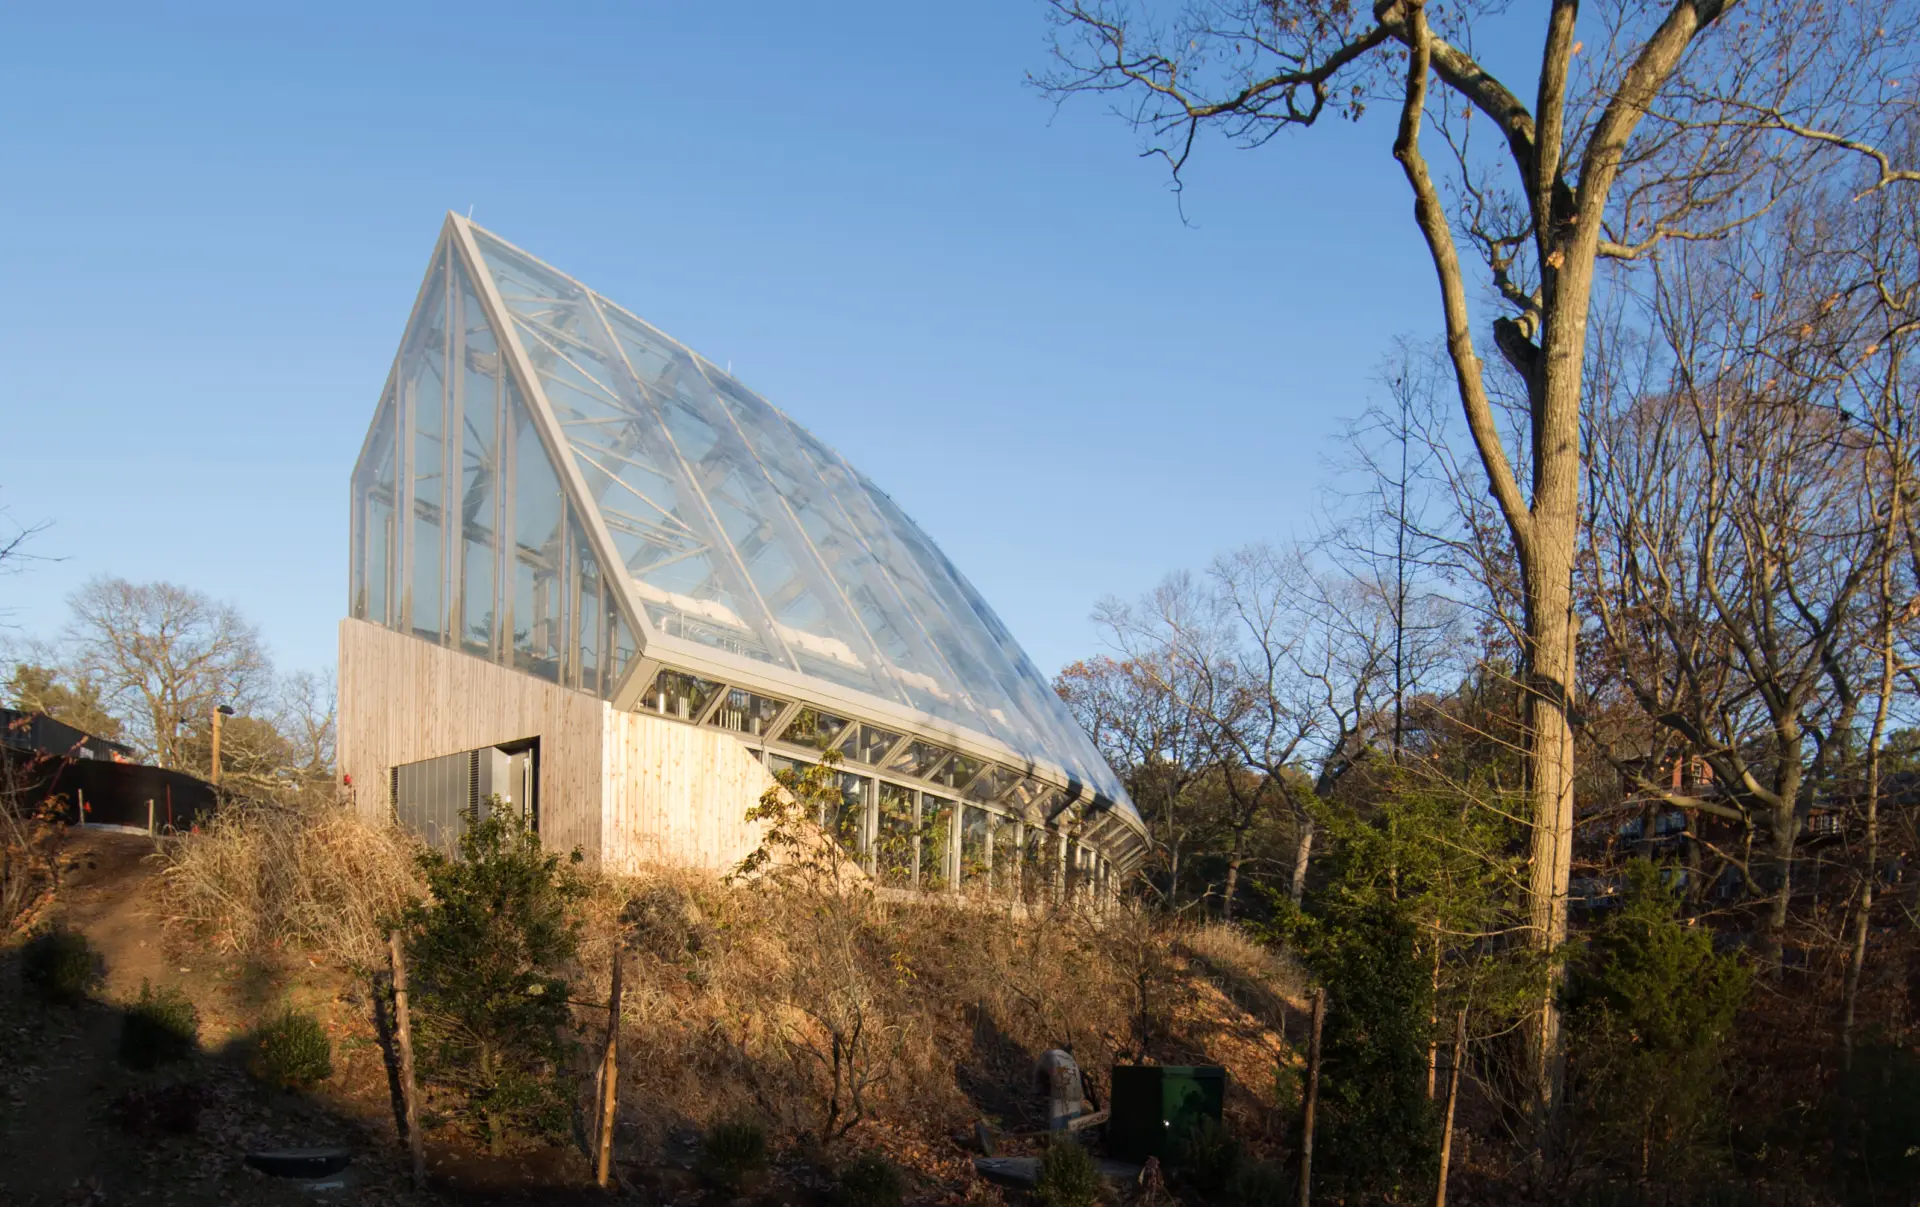 Die Global Flora am Wellesley College hat das Design eines nachhaltigen Gewächshauses mit Texlon ETFE-Dächern und Wänden neu interpretiert.